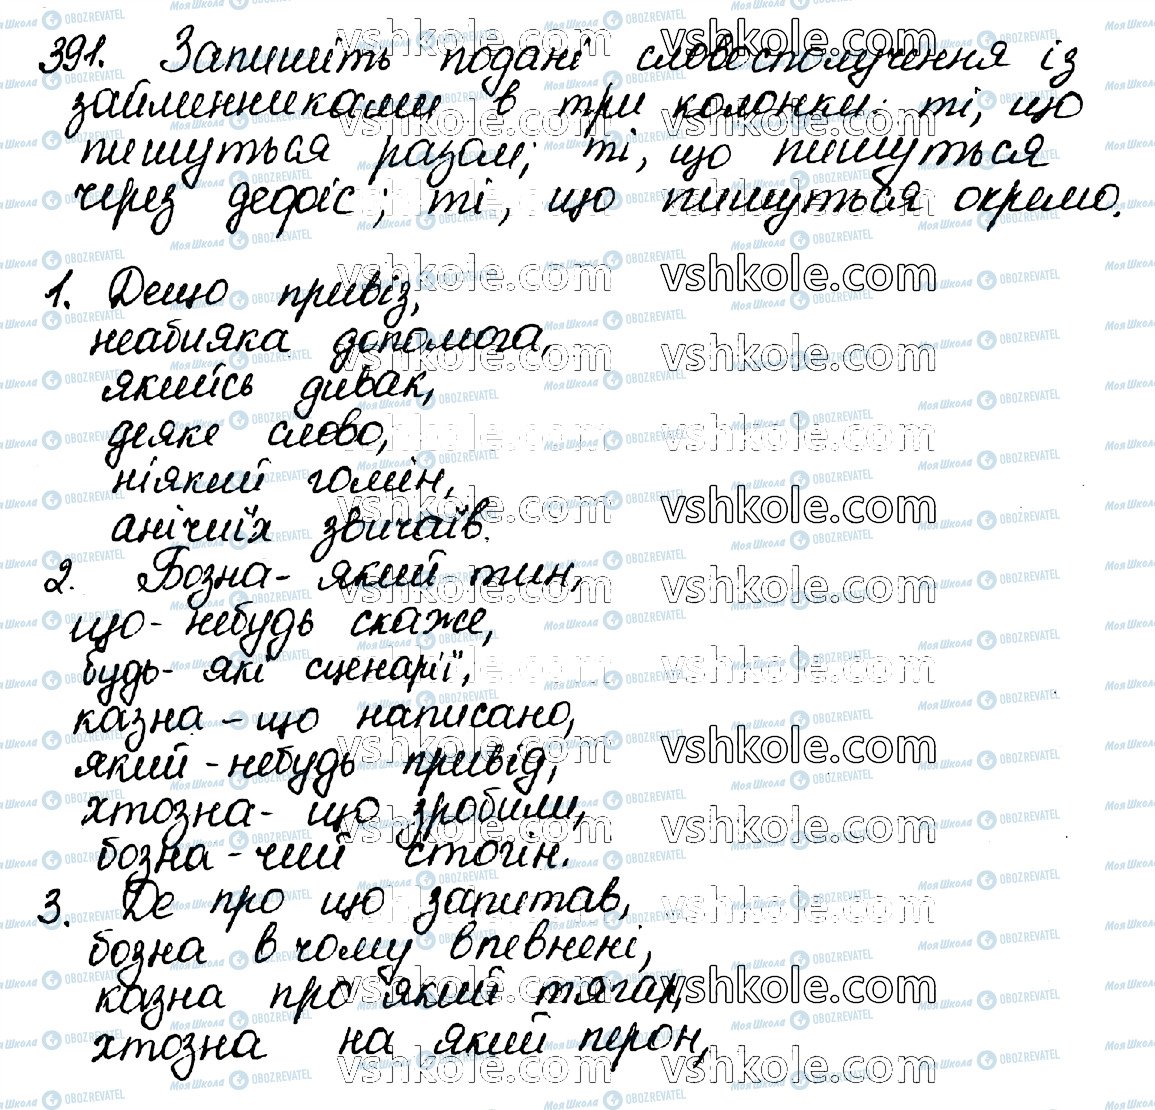 ГДЗ Українська мова 10 клас сторінка 391